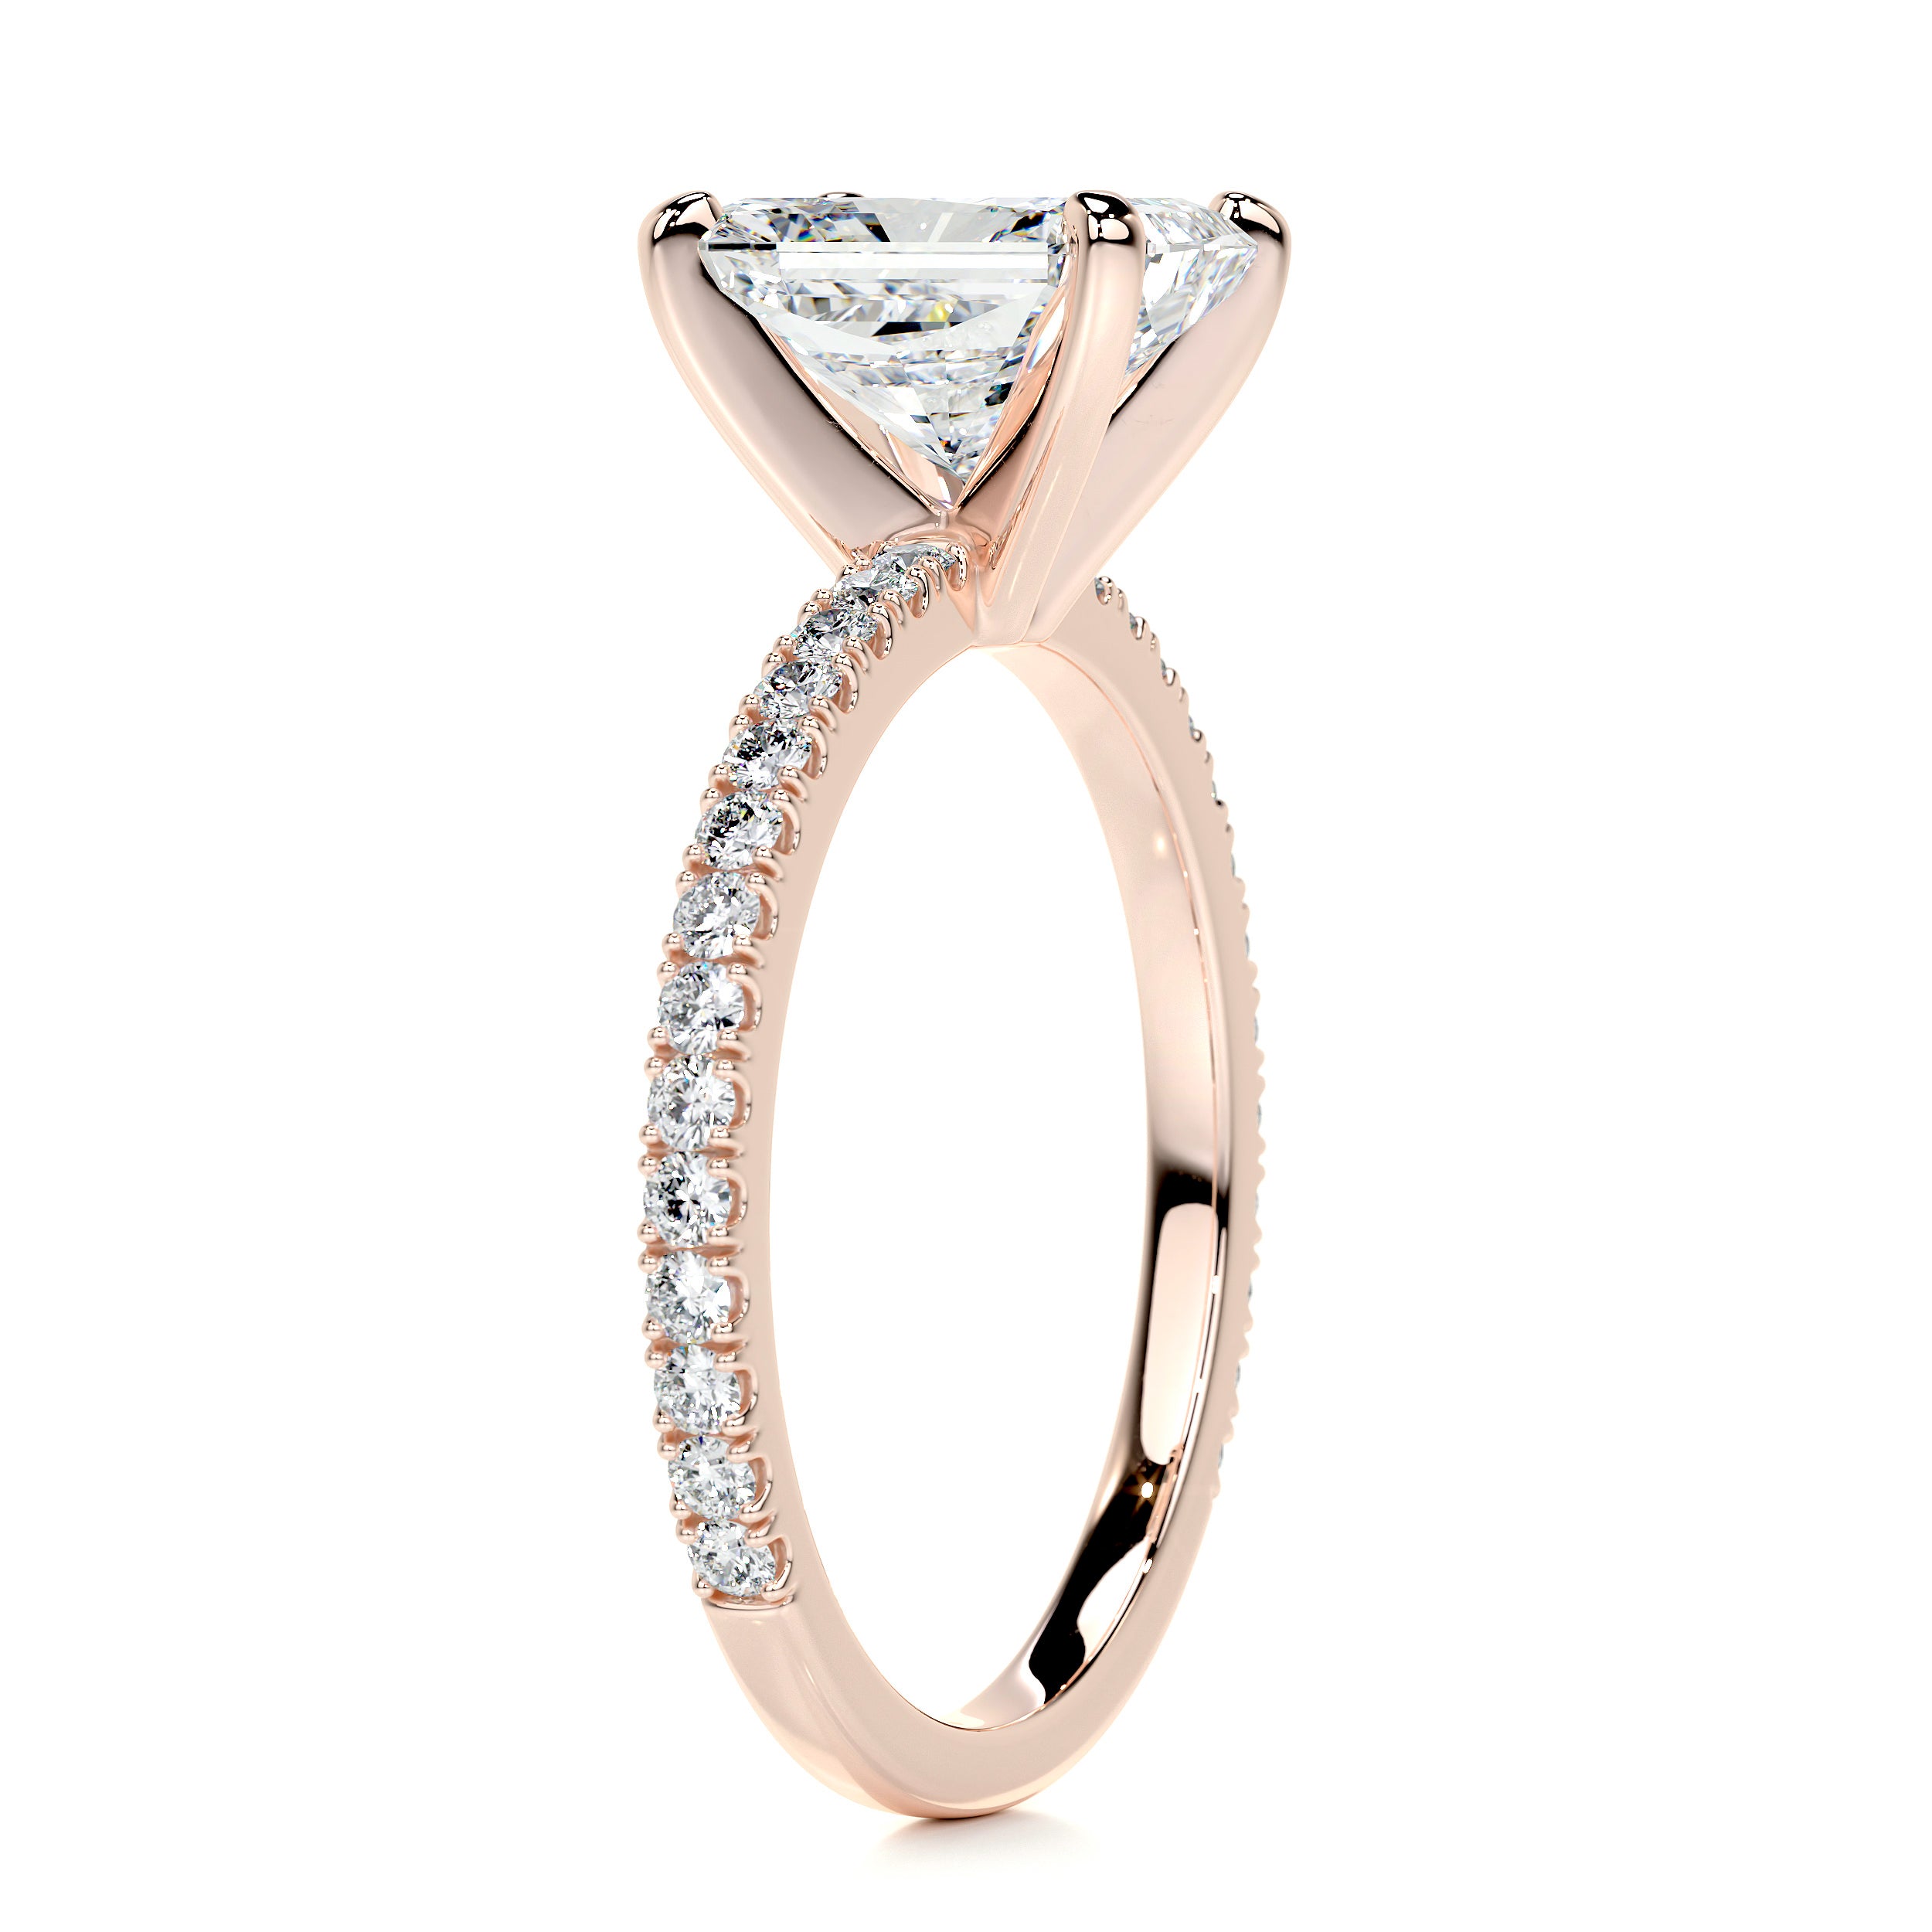 Audrey Diamond Engagement Ring   (2.3 Carat) -14K Rose Gold